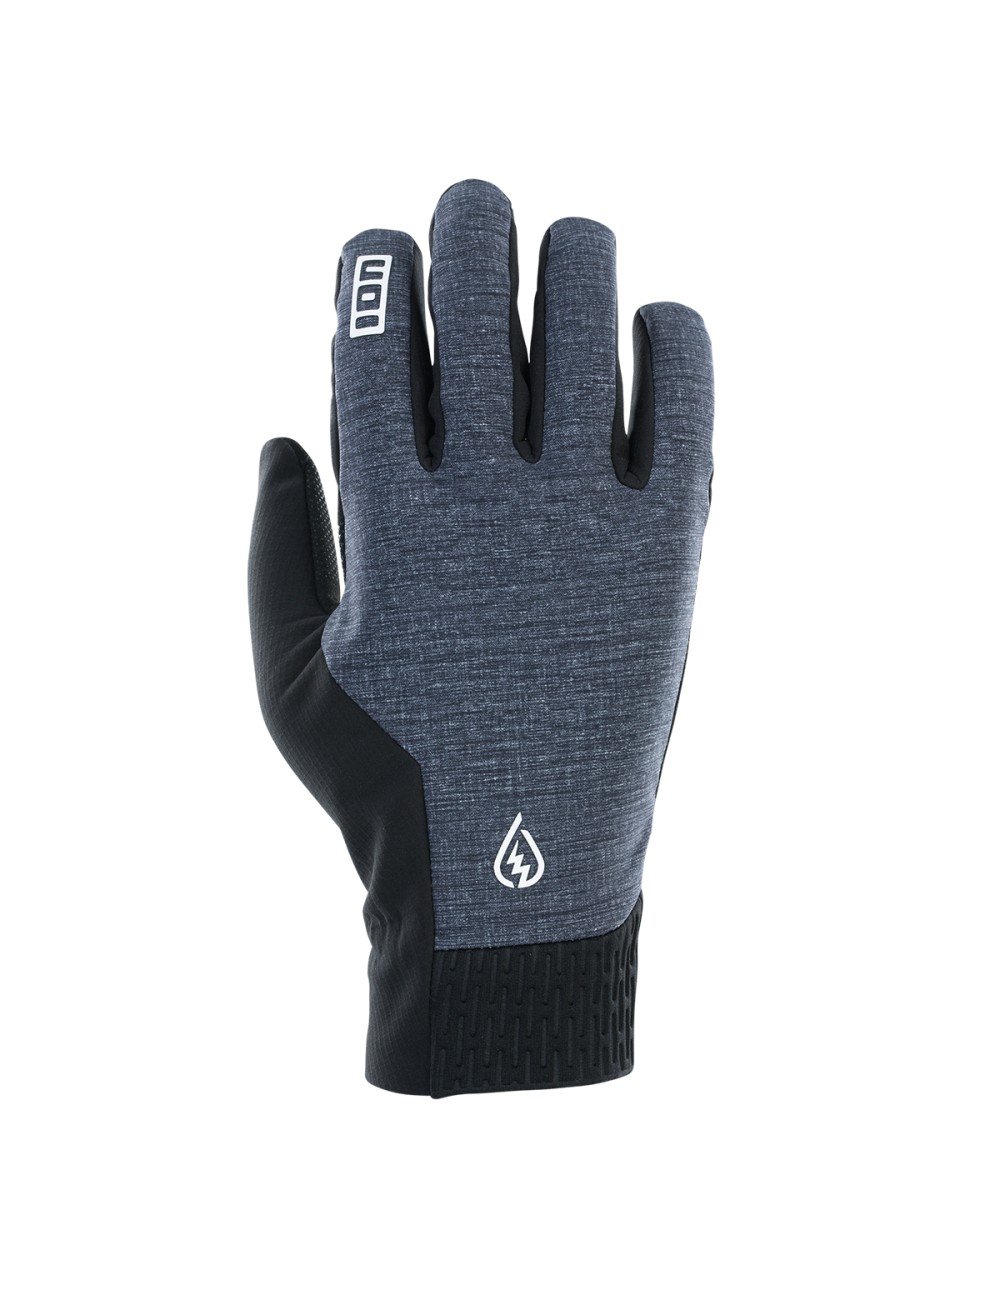 ION Gloves Shelter Amp Hybrid Padded - Black